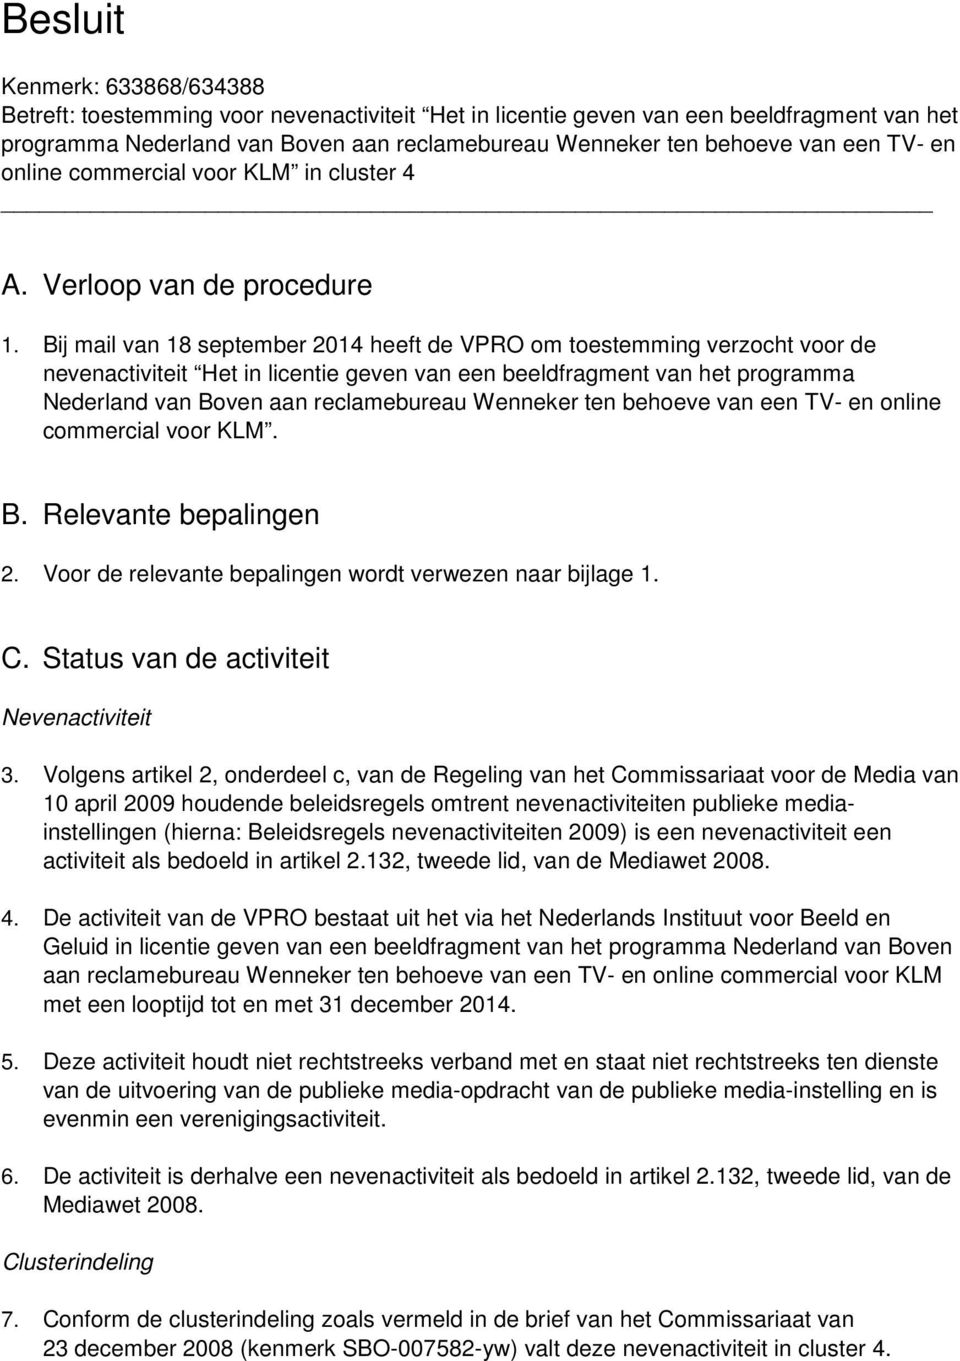 Bij mail van 18 september 2014 heeft de VPRO om toestemming verzocht voor de nevenactiviteit Het in licentie geven van een beeldfragment van het programma Nederland van Boven aan reclamebureau